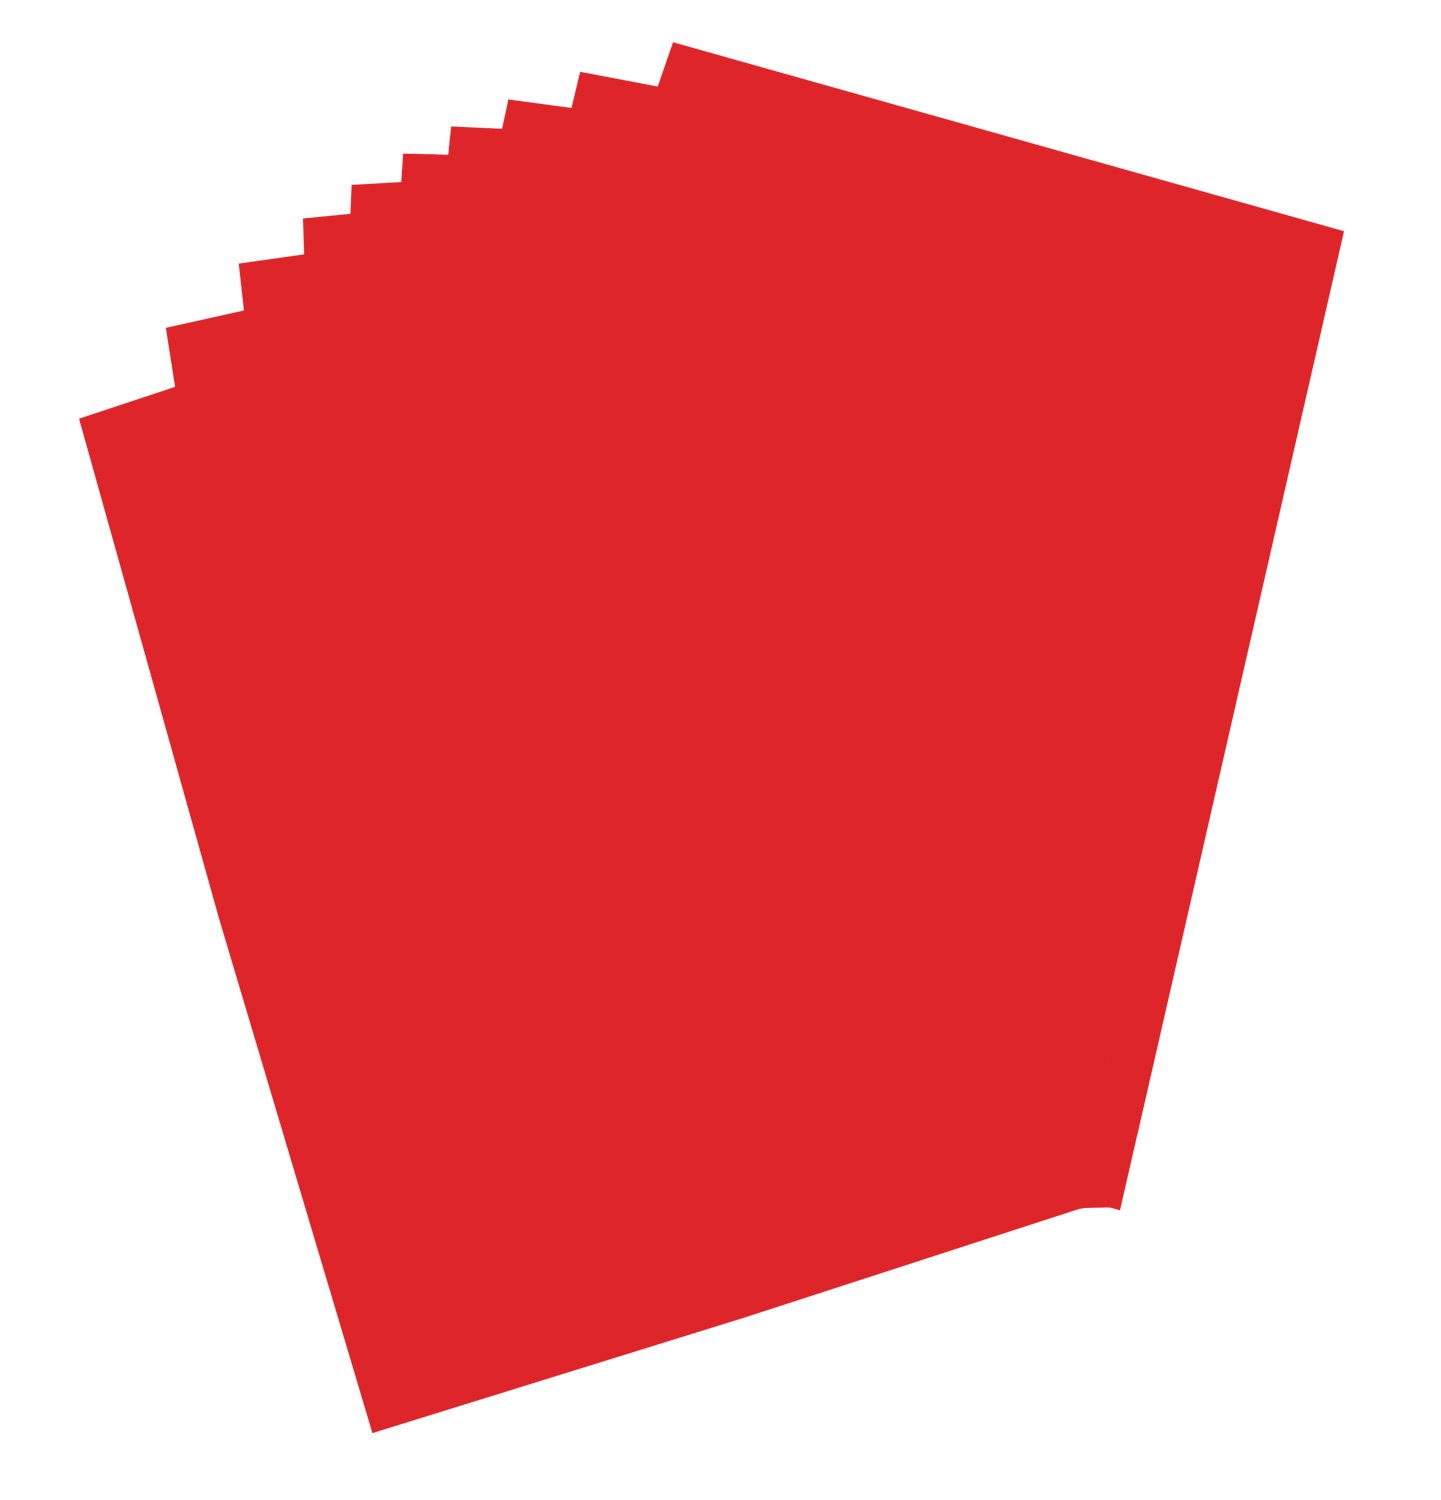 folia 65221 - Plakatkarton, ca. 48 x 68 cm, 10 Bögen, 380 g/qm, einseitig dunkelrot gefärbt - ideal zum Basteln oder Erstellen von Plakaten und Anzeigen